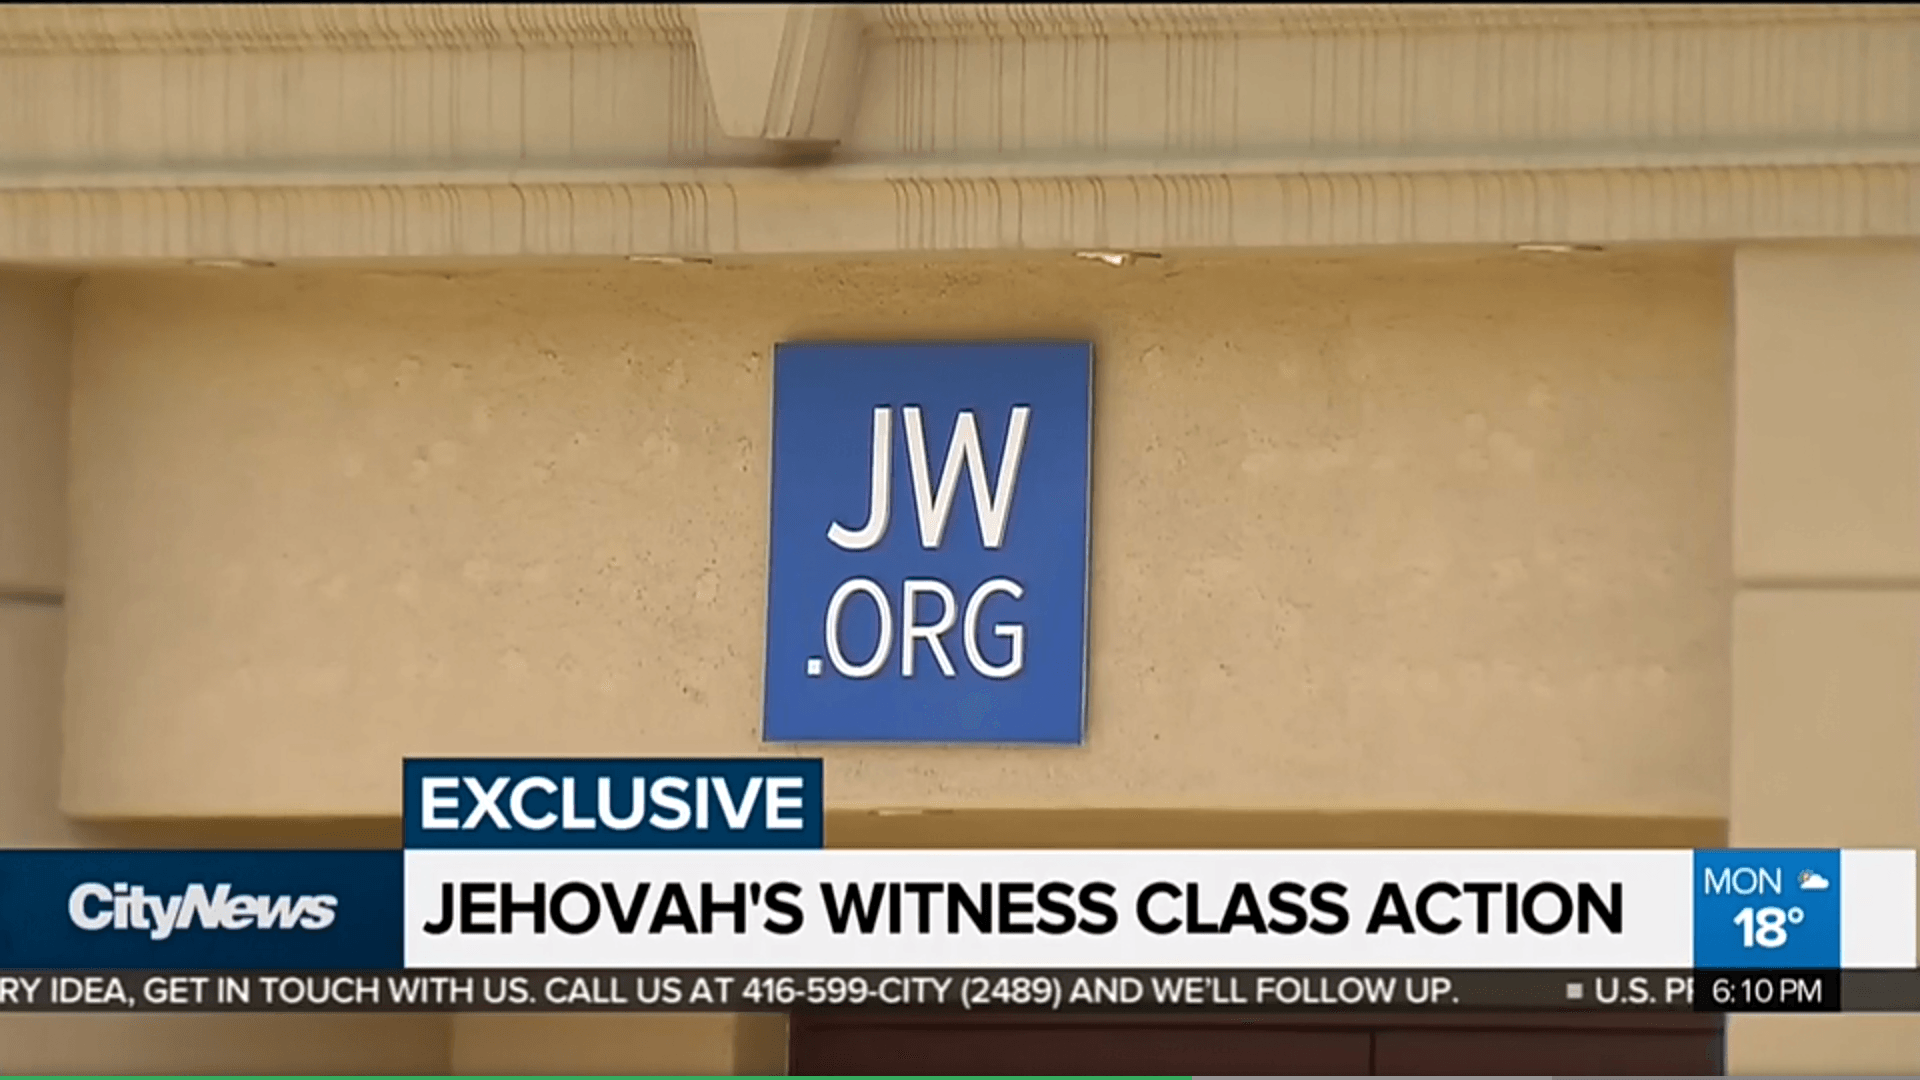 Jehovas Zeugen News Sammelklage 66 Millionen Kindesmissbrauch Pädophile Zwei-Zeugen-Regelung Wahrheiten jetzt! 66 Millionen Kanadische Dollar-Sammelklage gegen Zeugen Jehovas wegen sexuellem Missbrauch